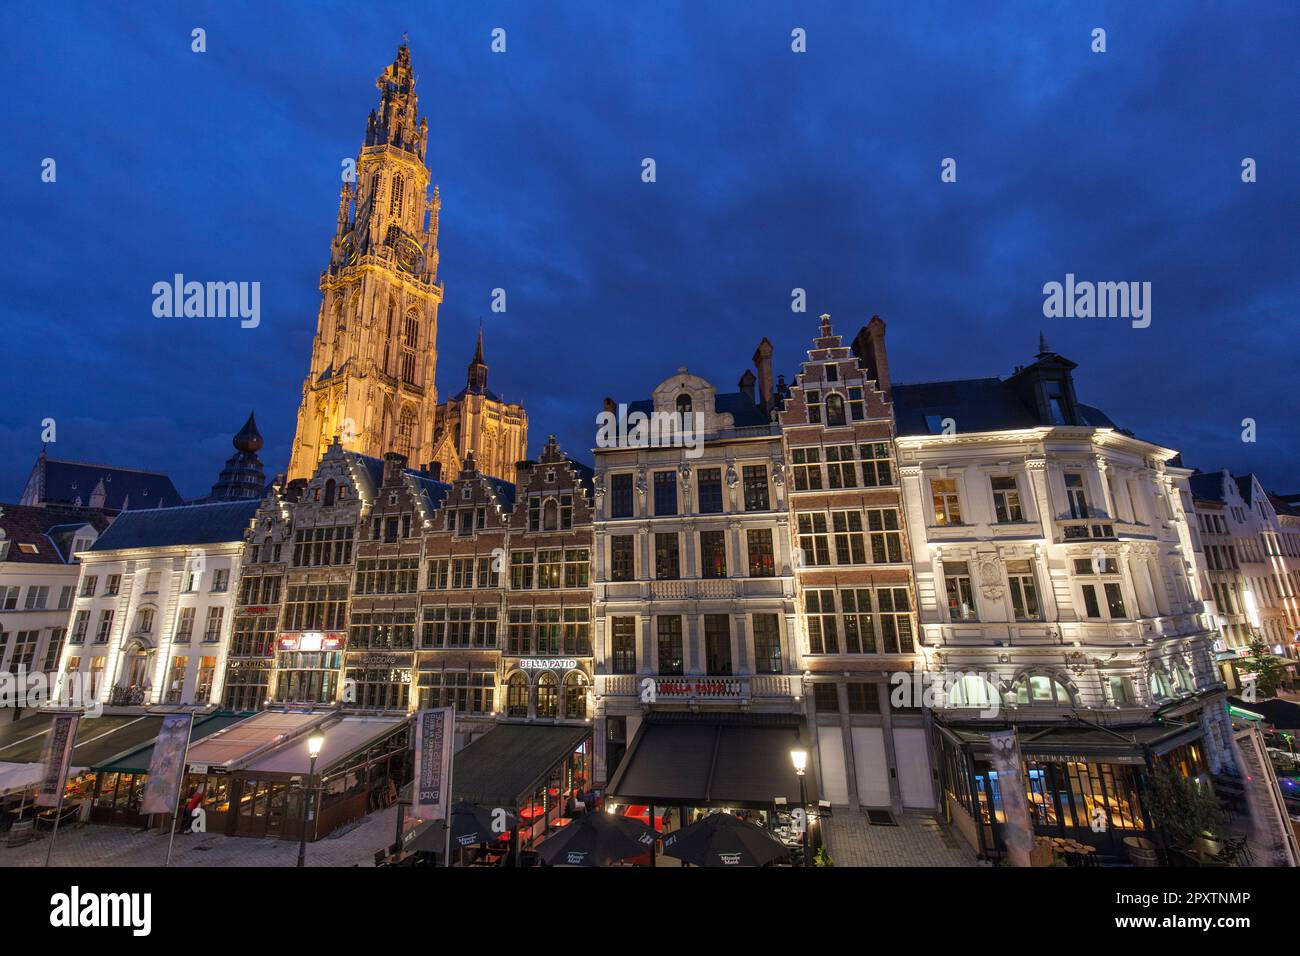 Historische Guildhalls in Grote Markt Altstadt Antwerpen mit dem Turm der gotischen Kathedrale unserer Lieben Frau, Onze Live Vrouwe kathedraal in der Abenddämmerung, Nacht. Stockfoto